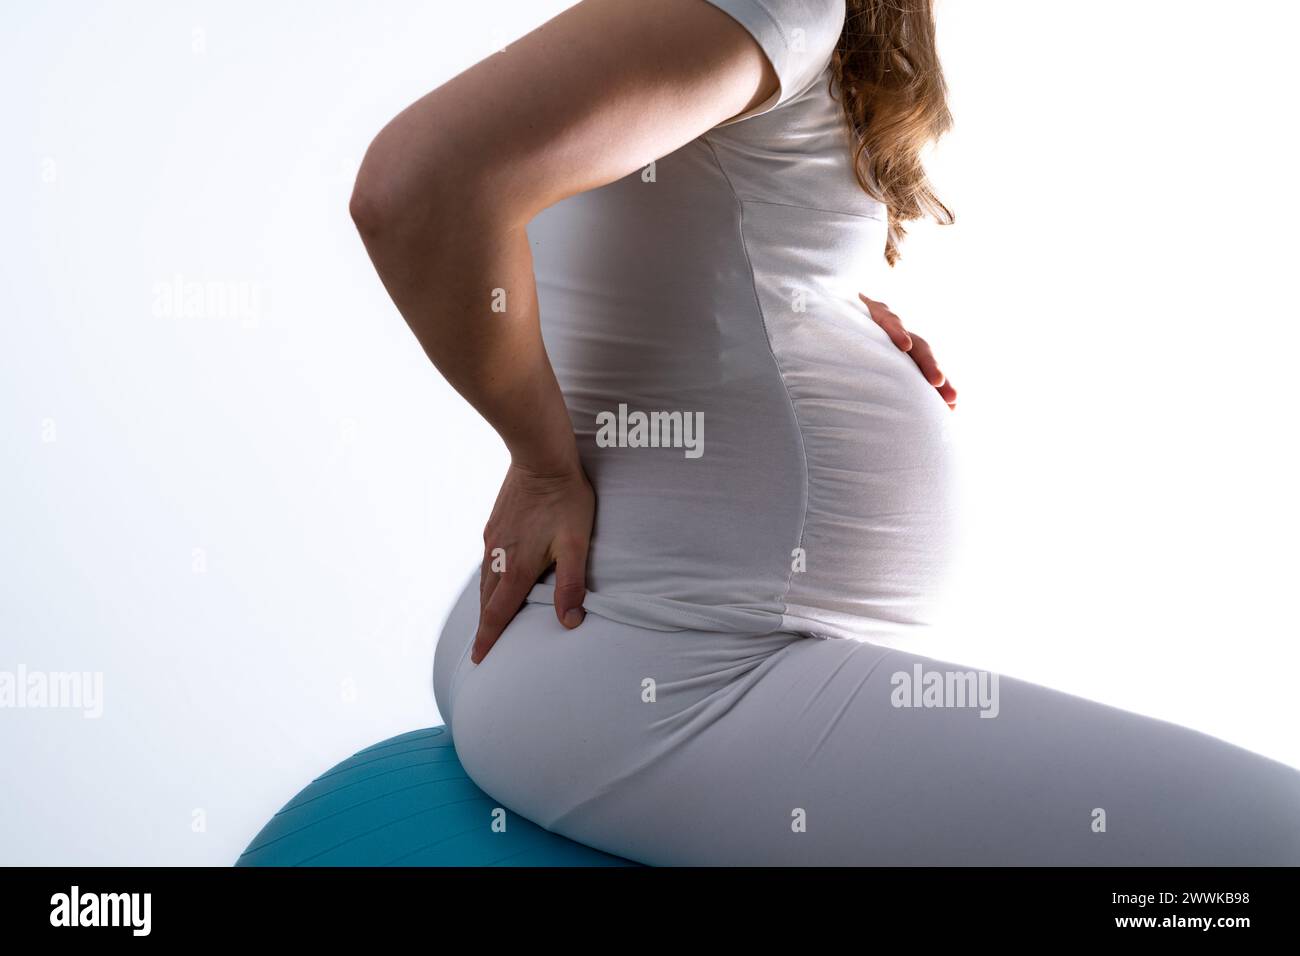 Beschreibung: Schwangere Frau mit Baby-Unebenheit auf Gymnastikball fühlt Rückenschmerzen und hält die Hand auf ihrem schmerzenden Rücken. Letzter Schwangerschaftsmonat - Woche 36. Si Stockfoto